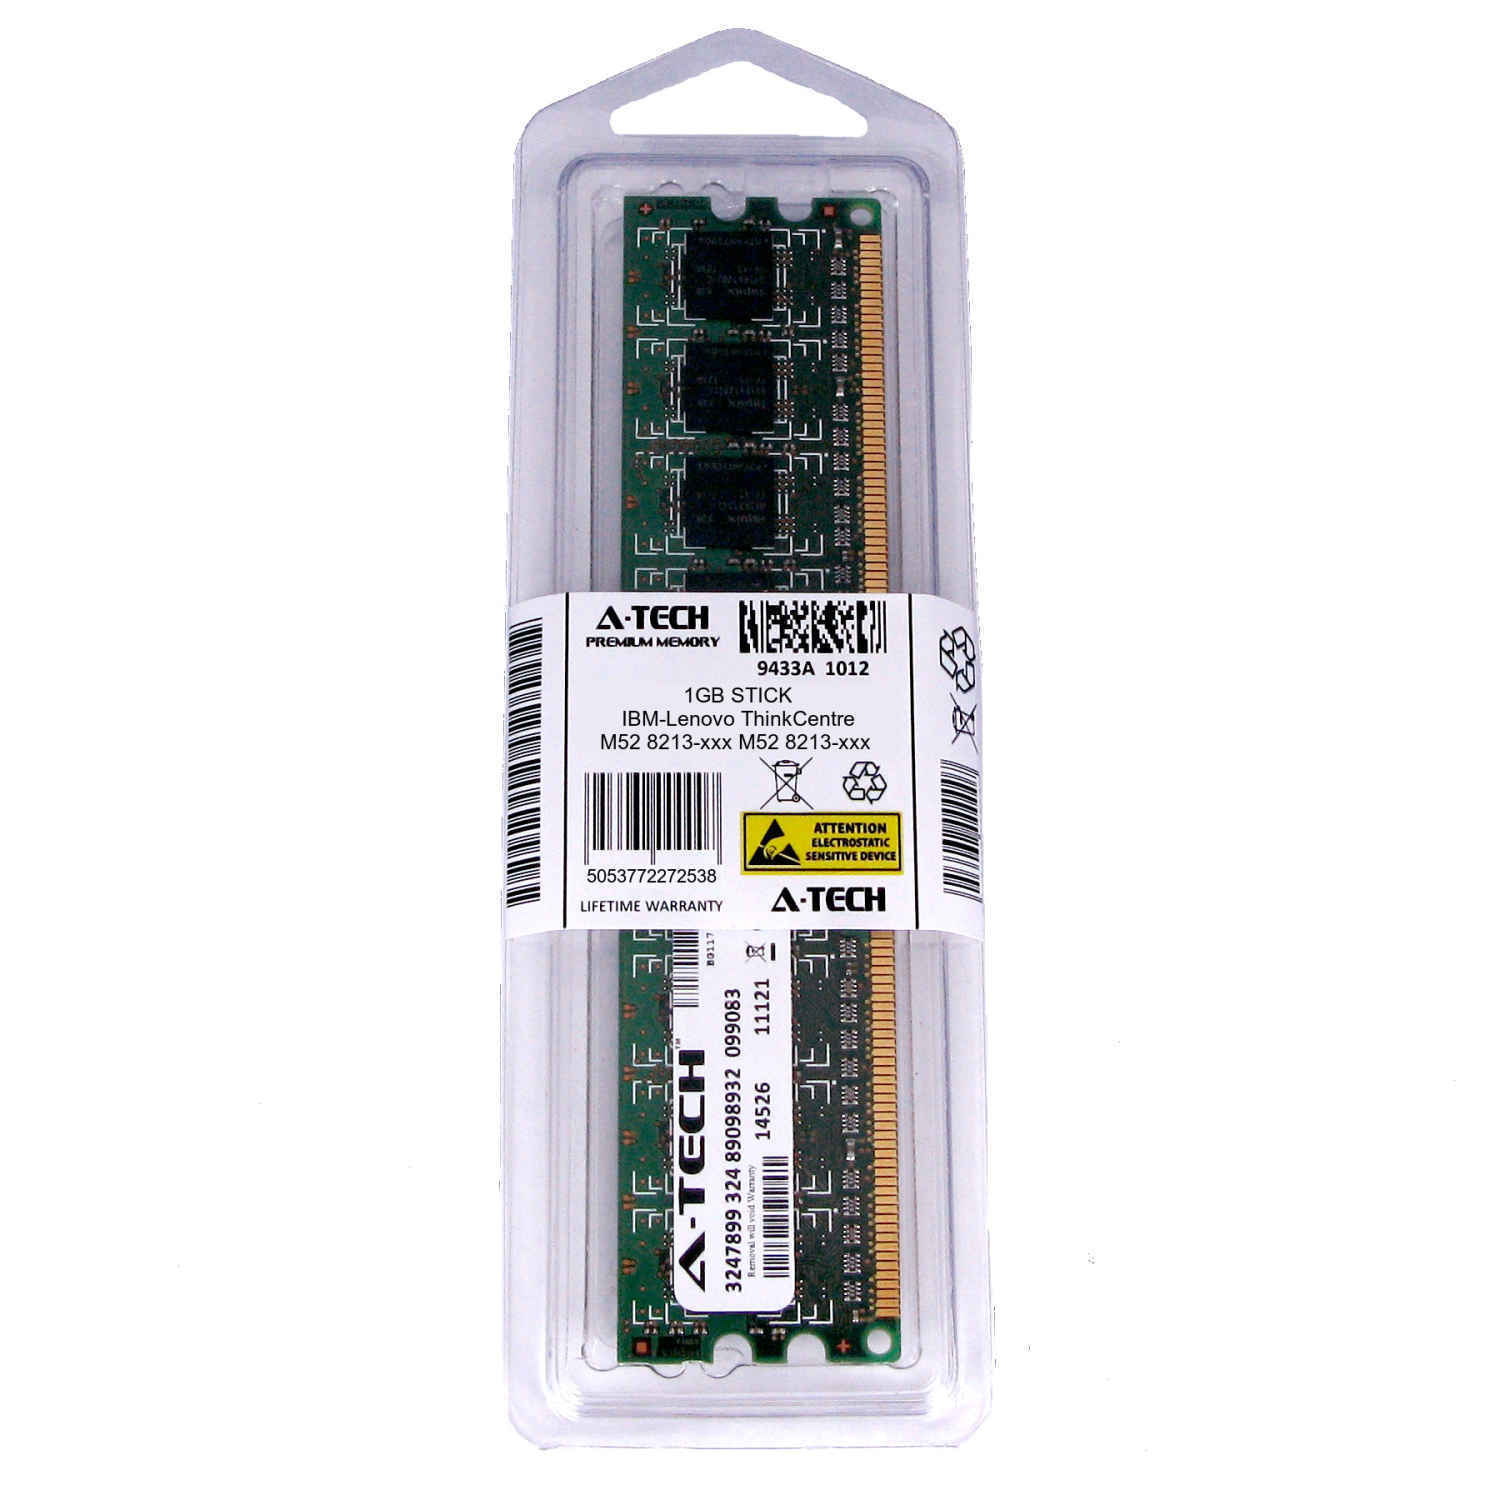 1GB DIMM IBM-Lenovo ThinkCentre M52 8213-xxx 8214-xxx 8215-xxx Ram Memory